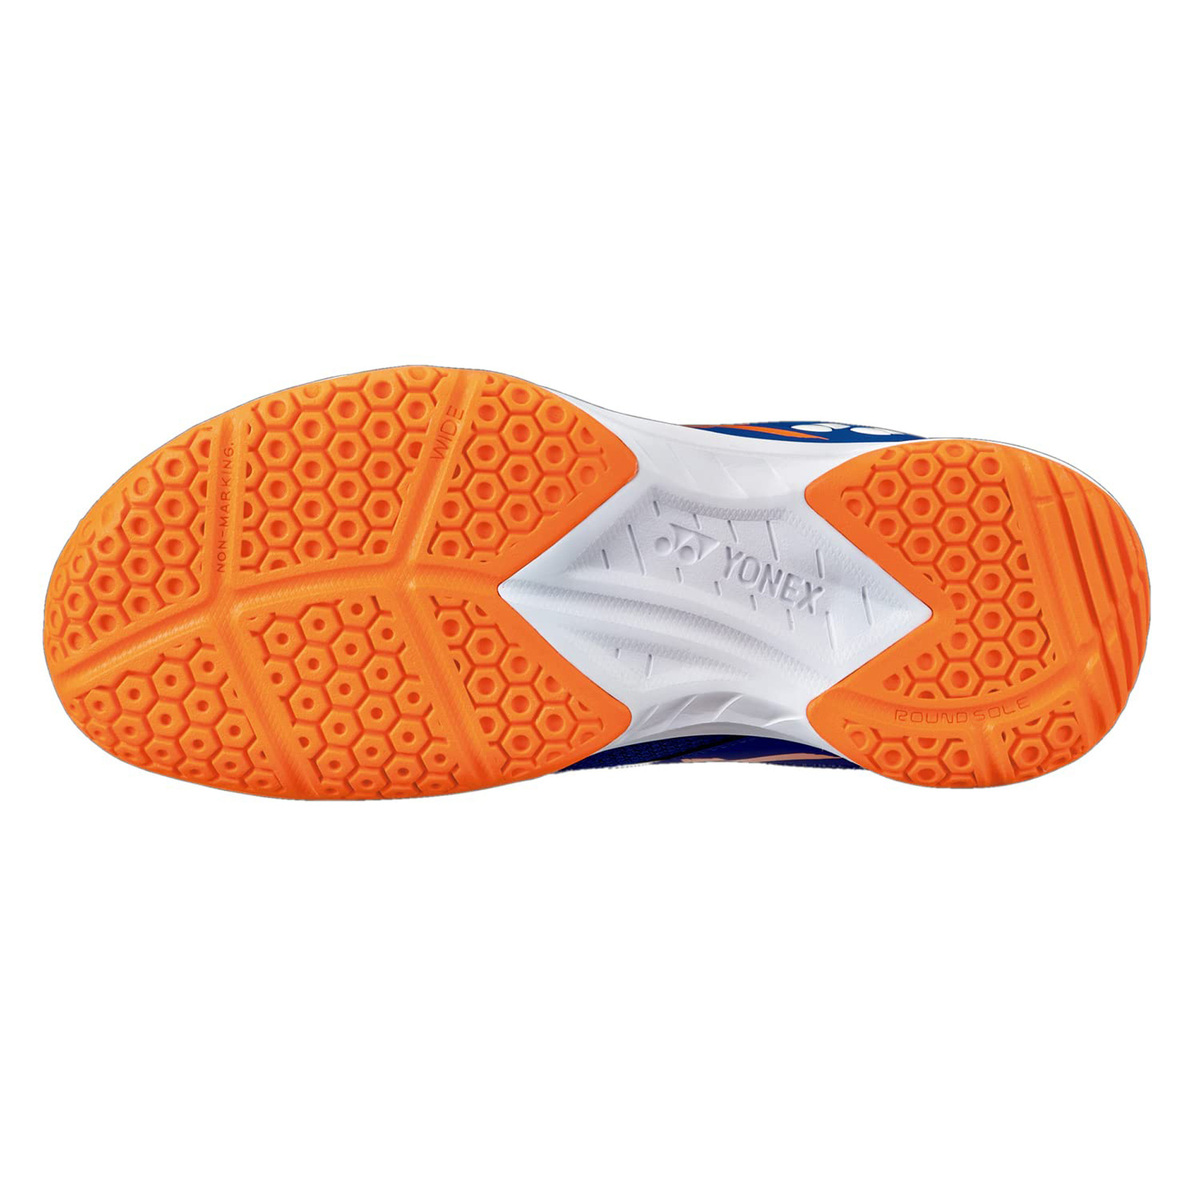 يونيكس حذاء تنس الريشة للرجال، SHB39WEX، أزرق/برتقالي، 42